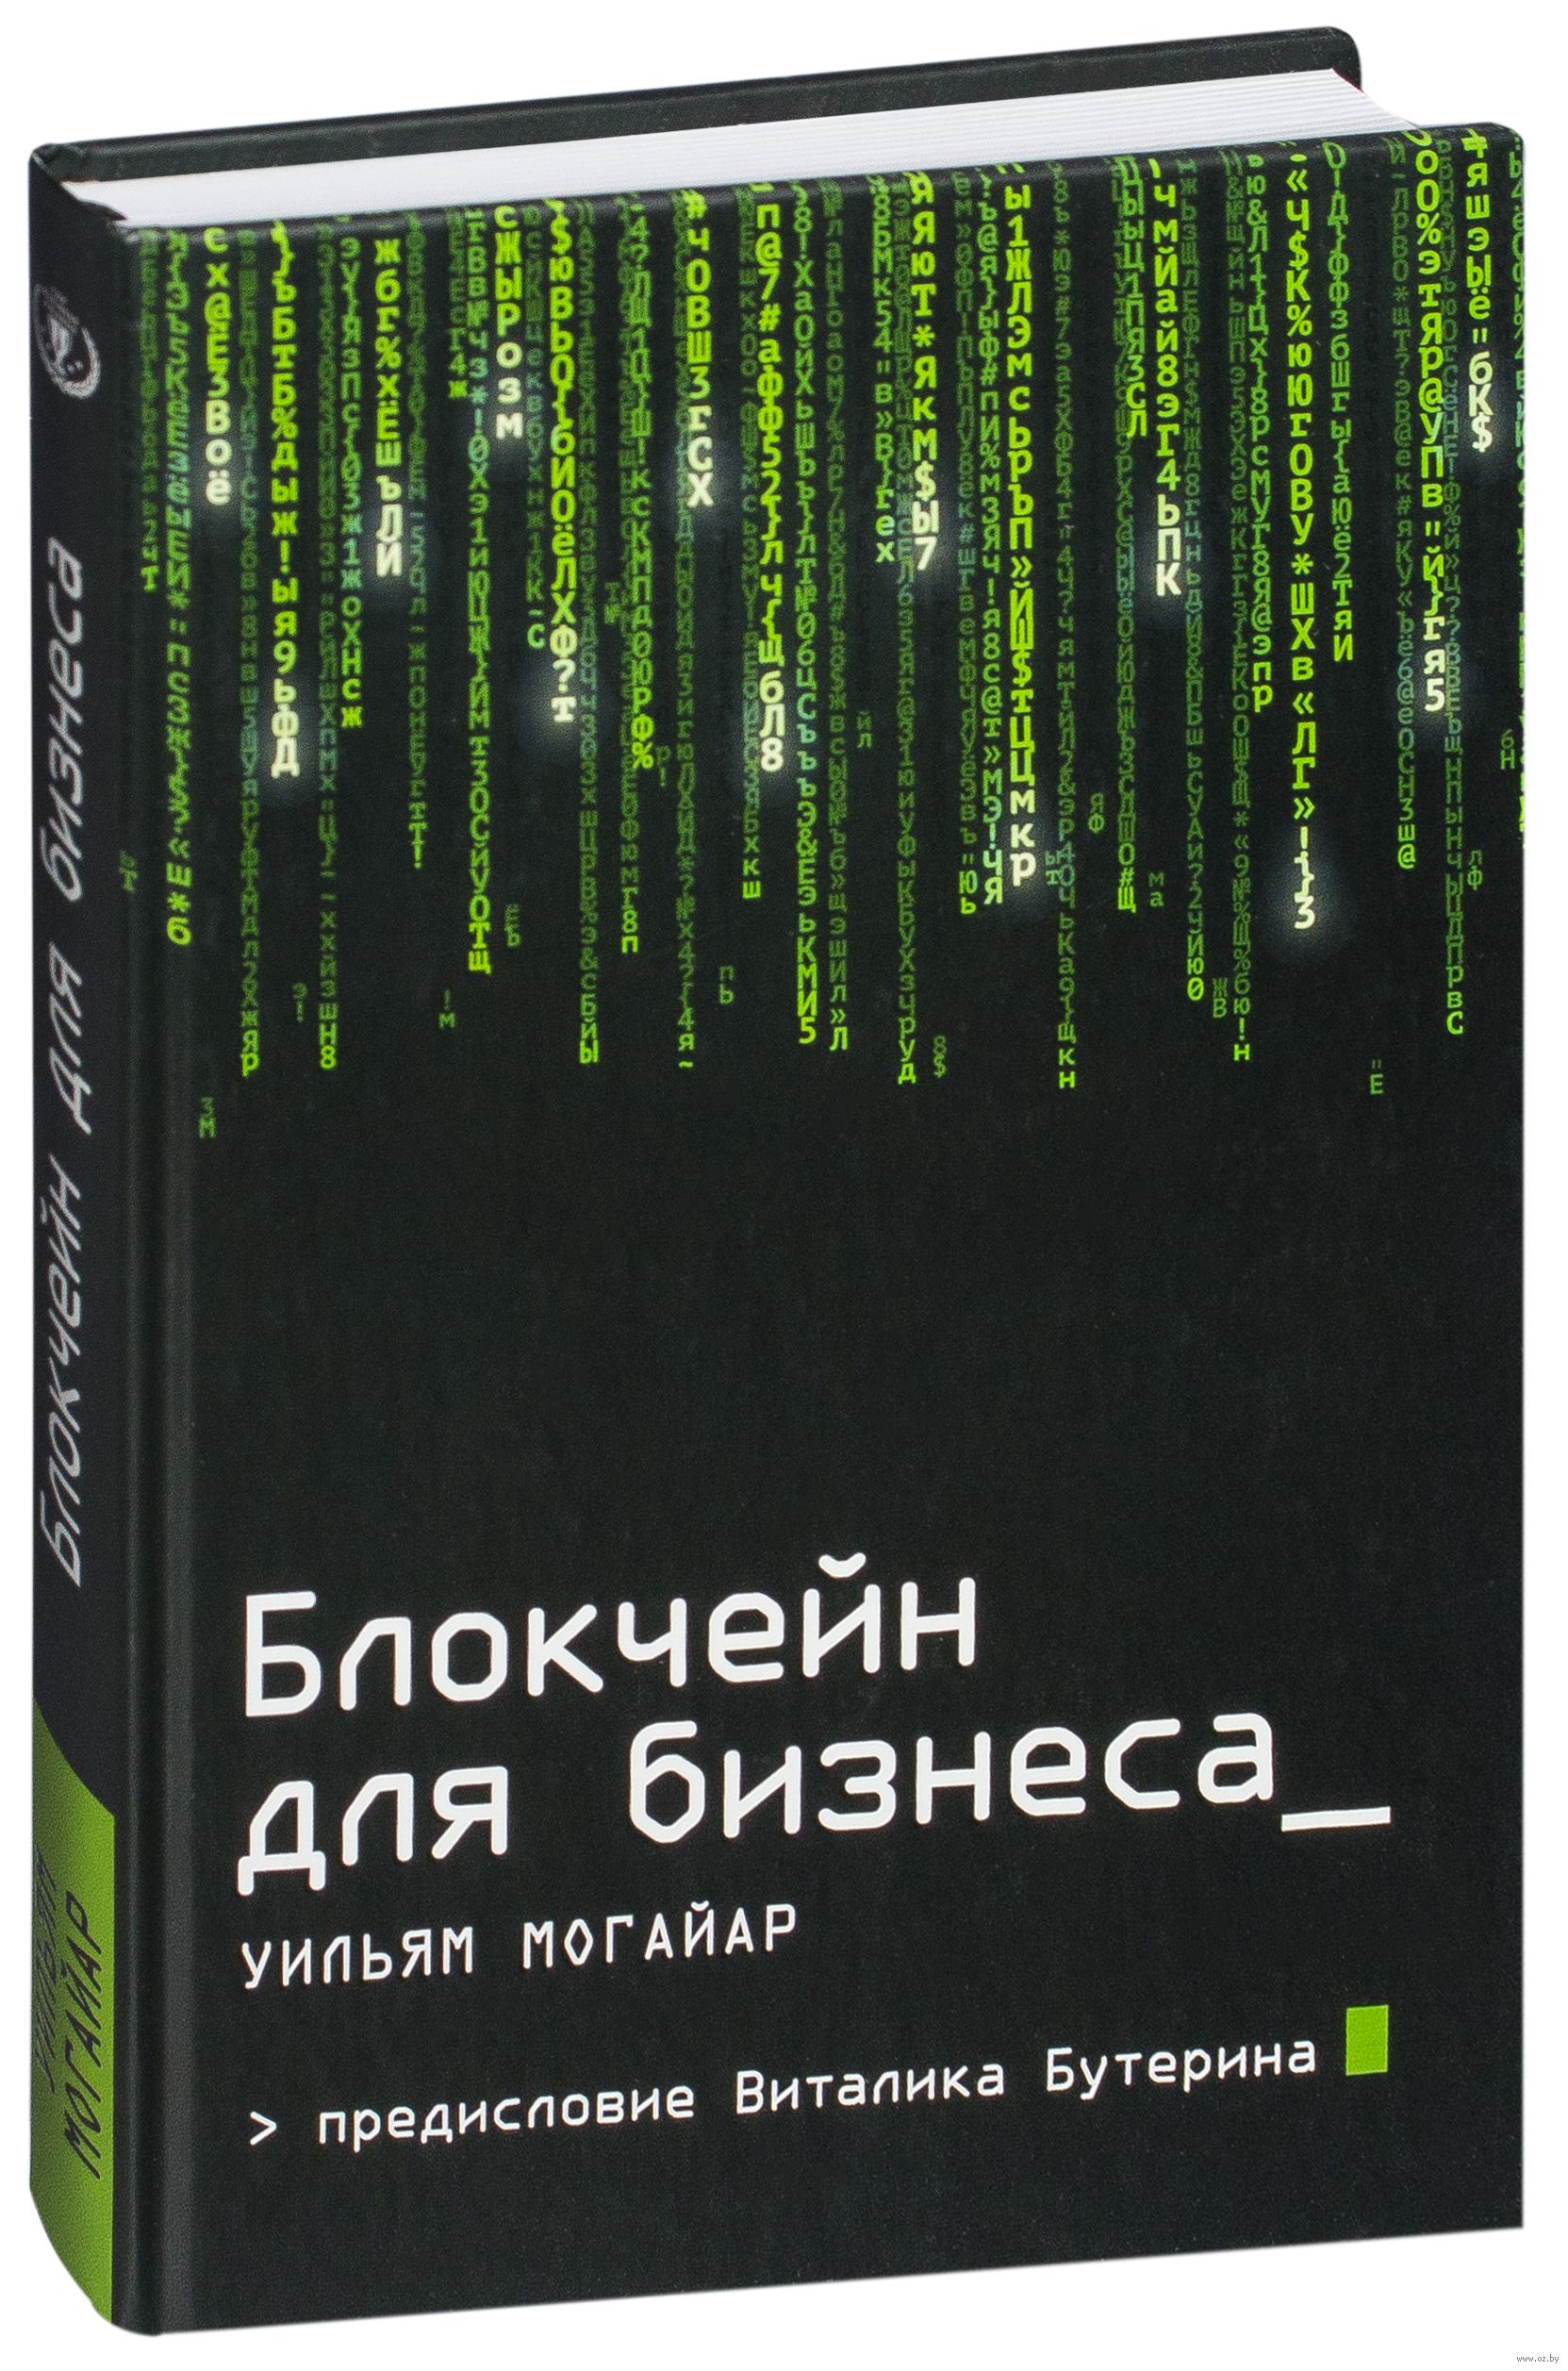 Блокчейн для бизнеса / Уильям Могайар / Москва: Издательство “Эксмо”, 2018.